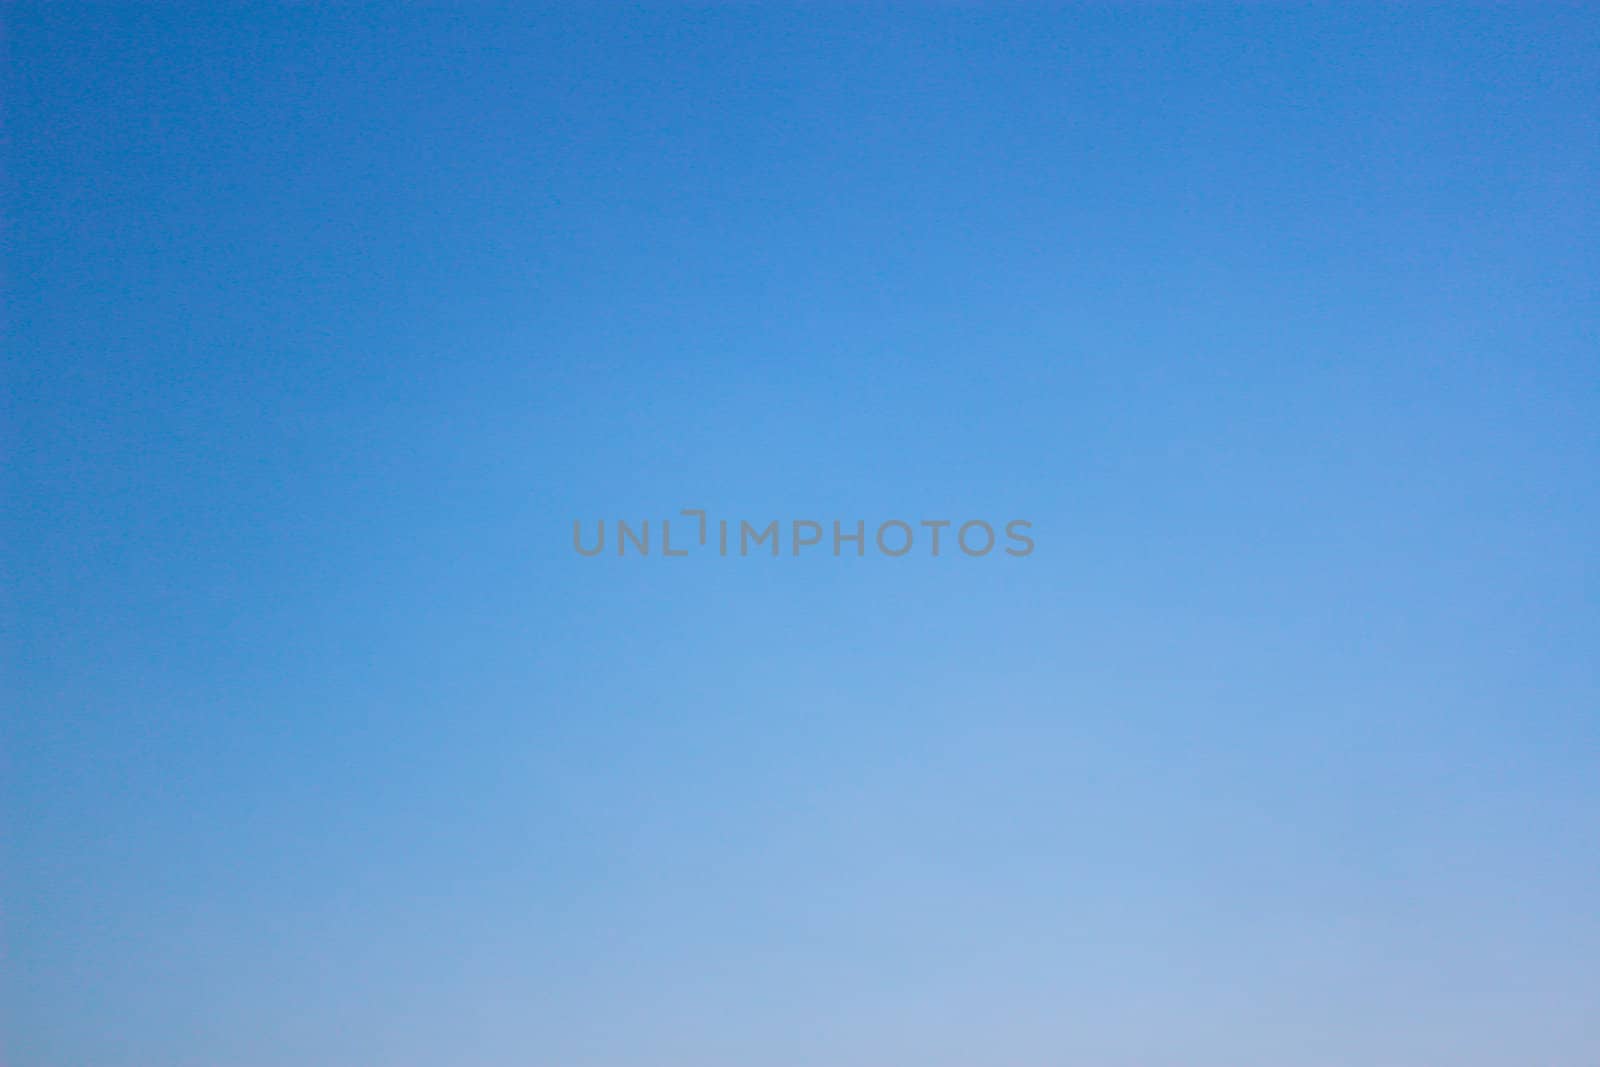 Blue sky background. by bajita111122